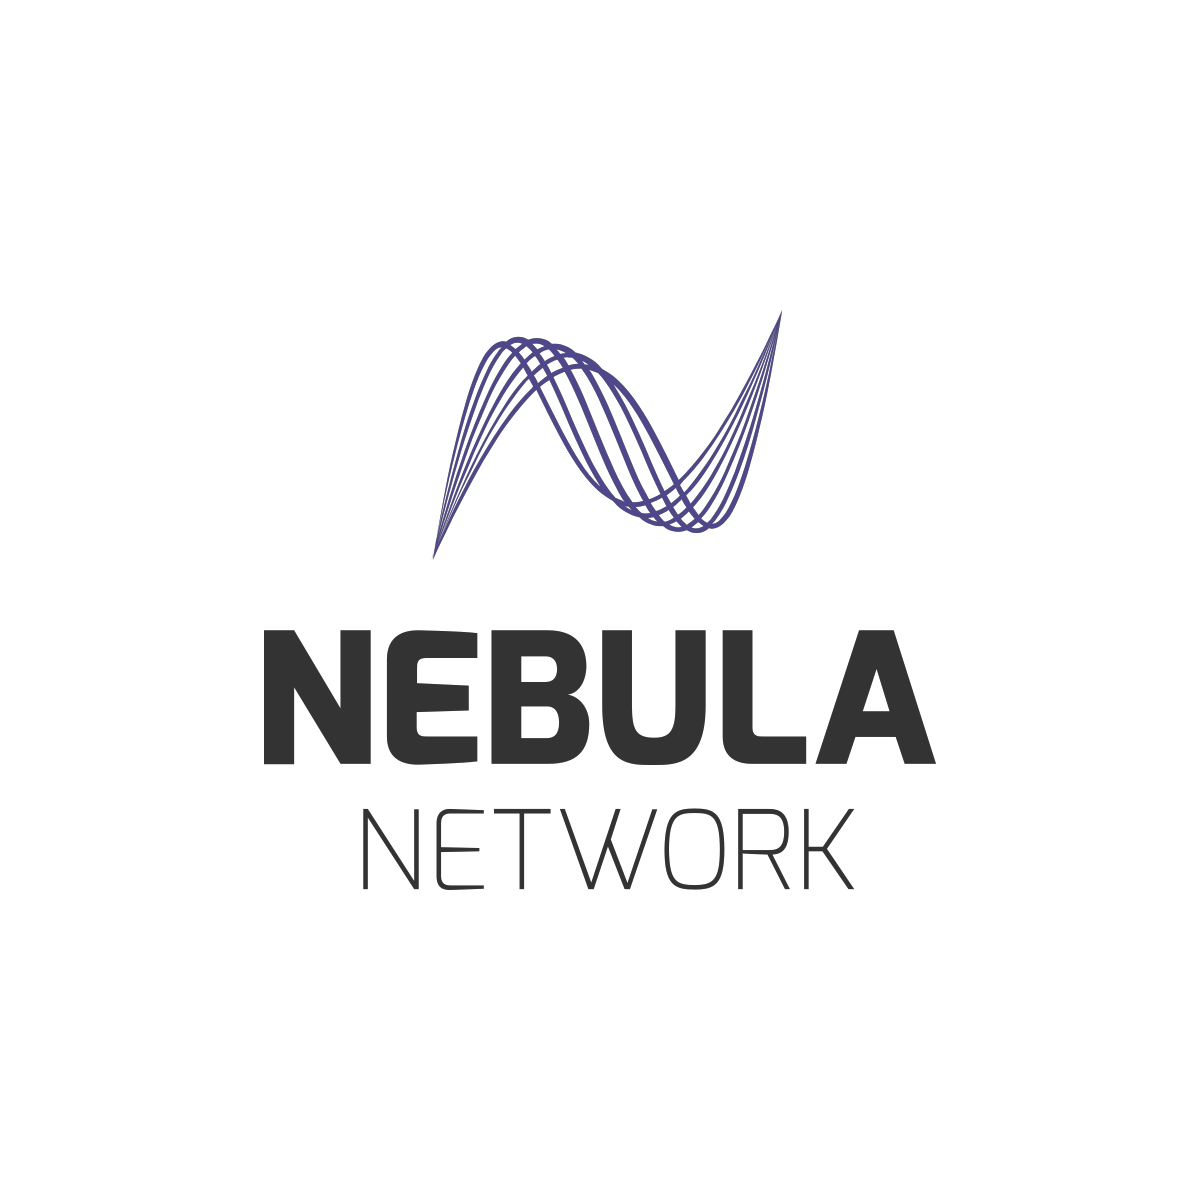 Nebula Network - Intrinsic value decentralized